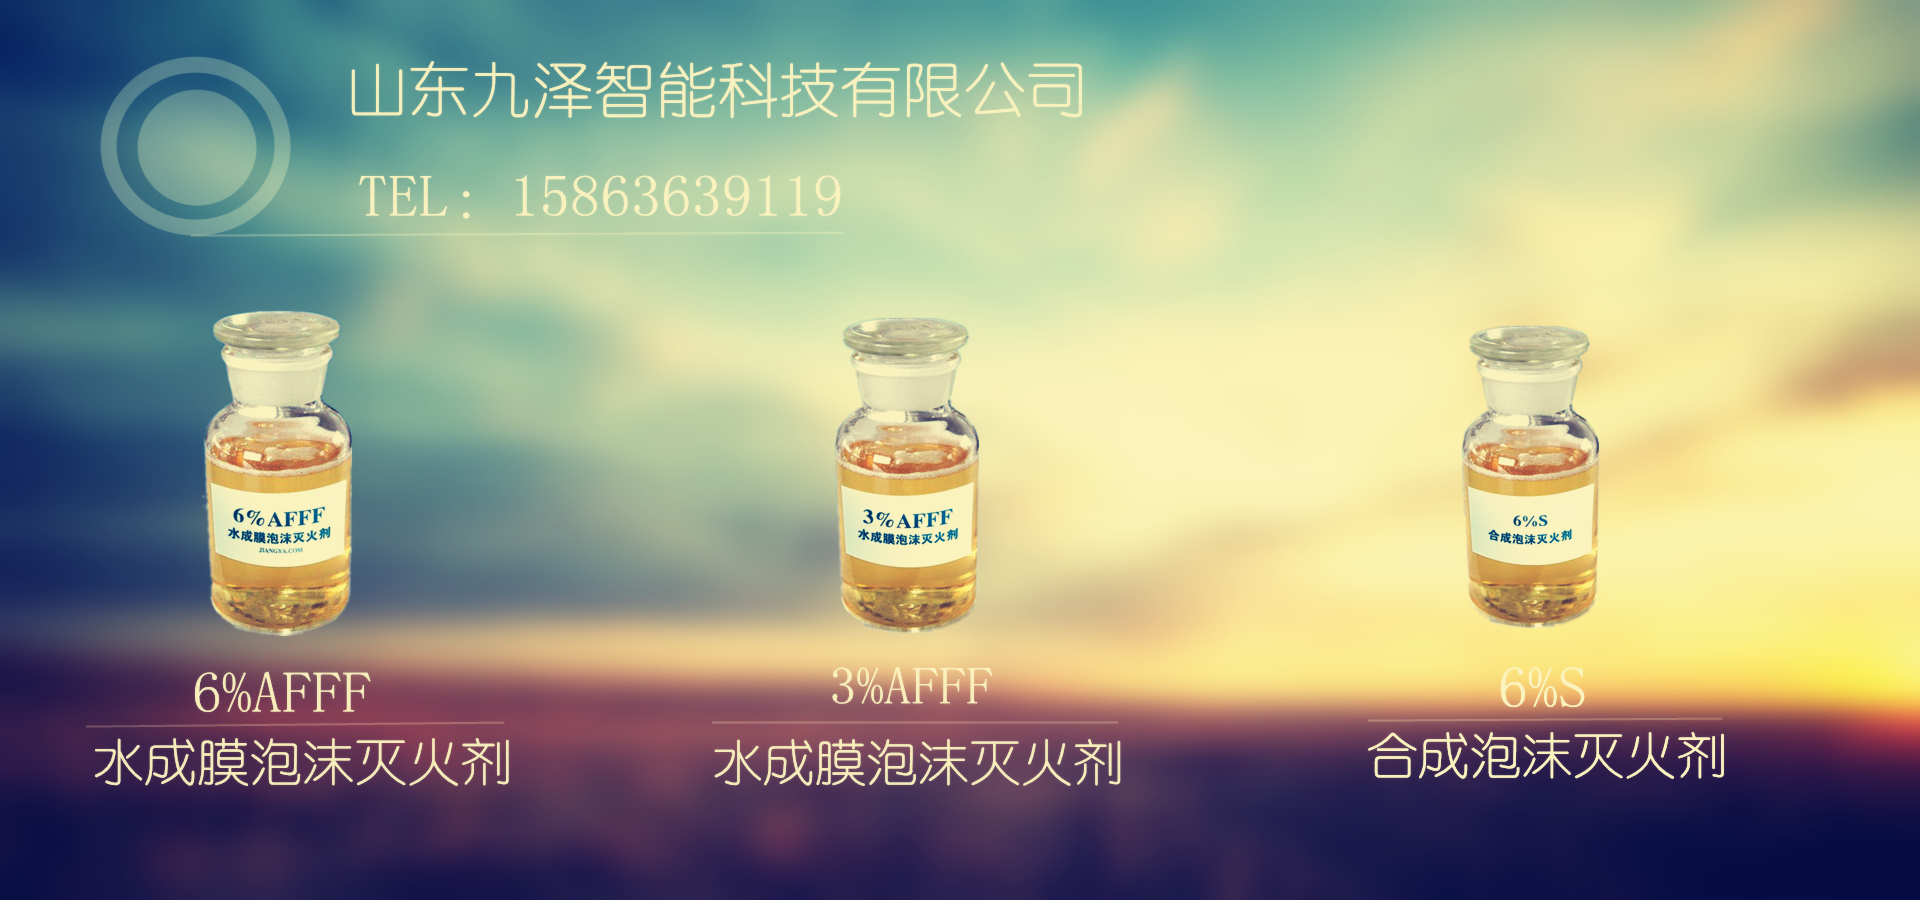 山东潍坊消防泡沫罐抗溶性合成泡沫液（3% 6%）厂家更换销售.jpg